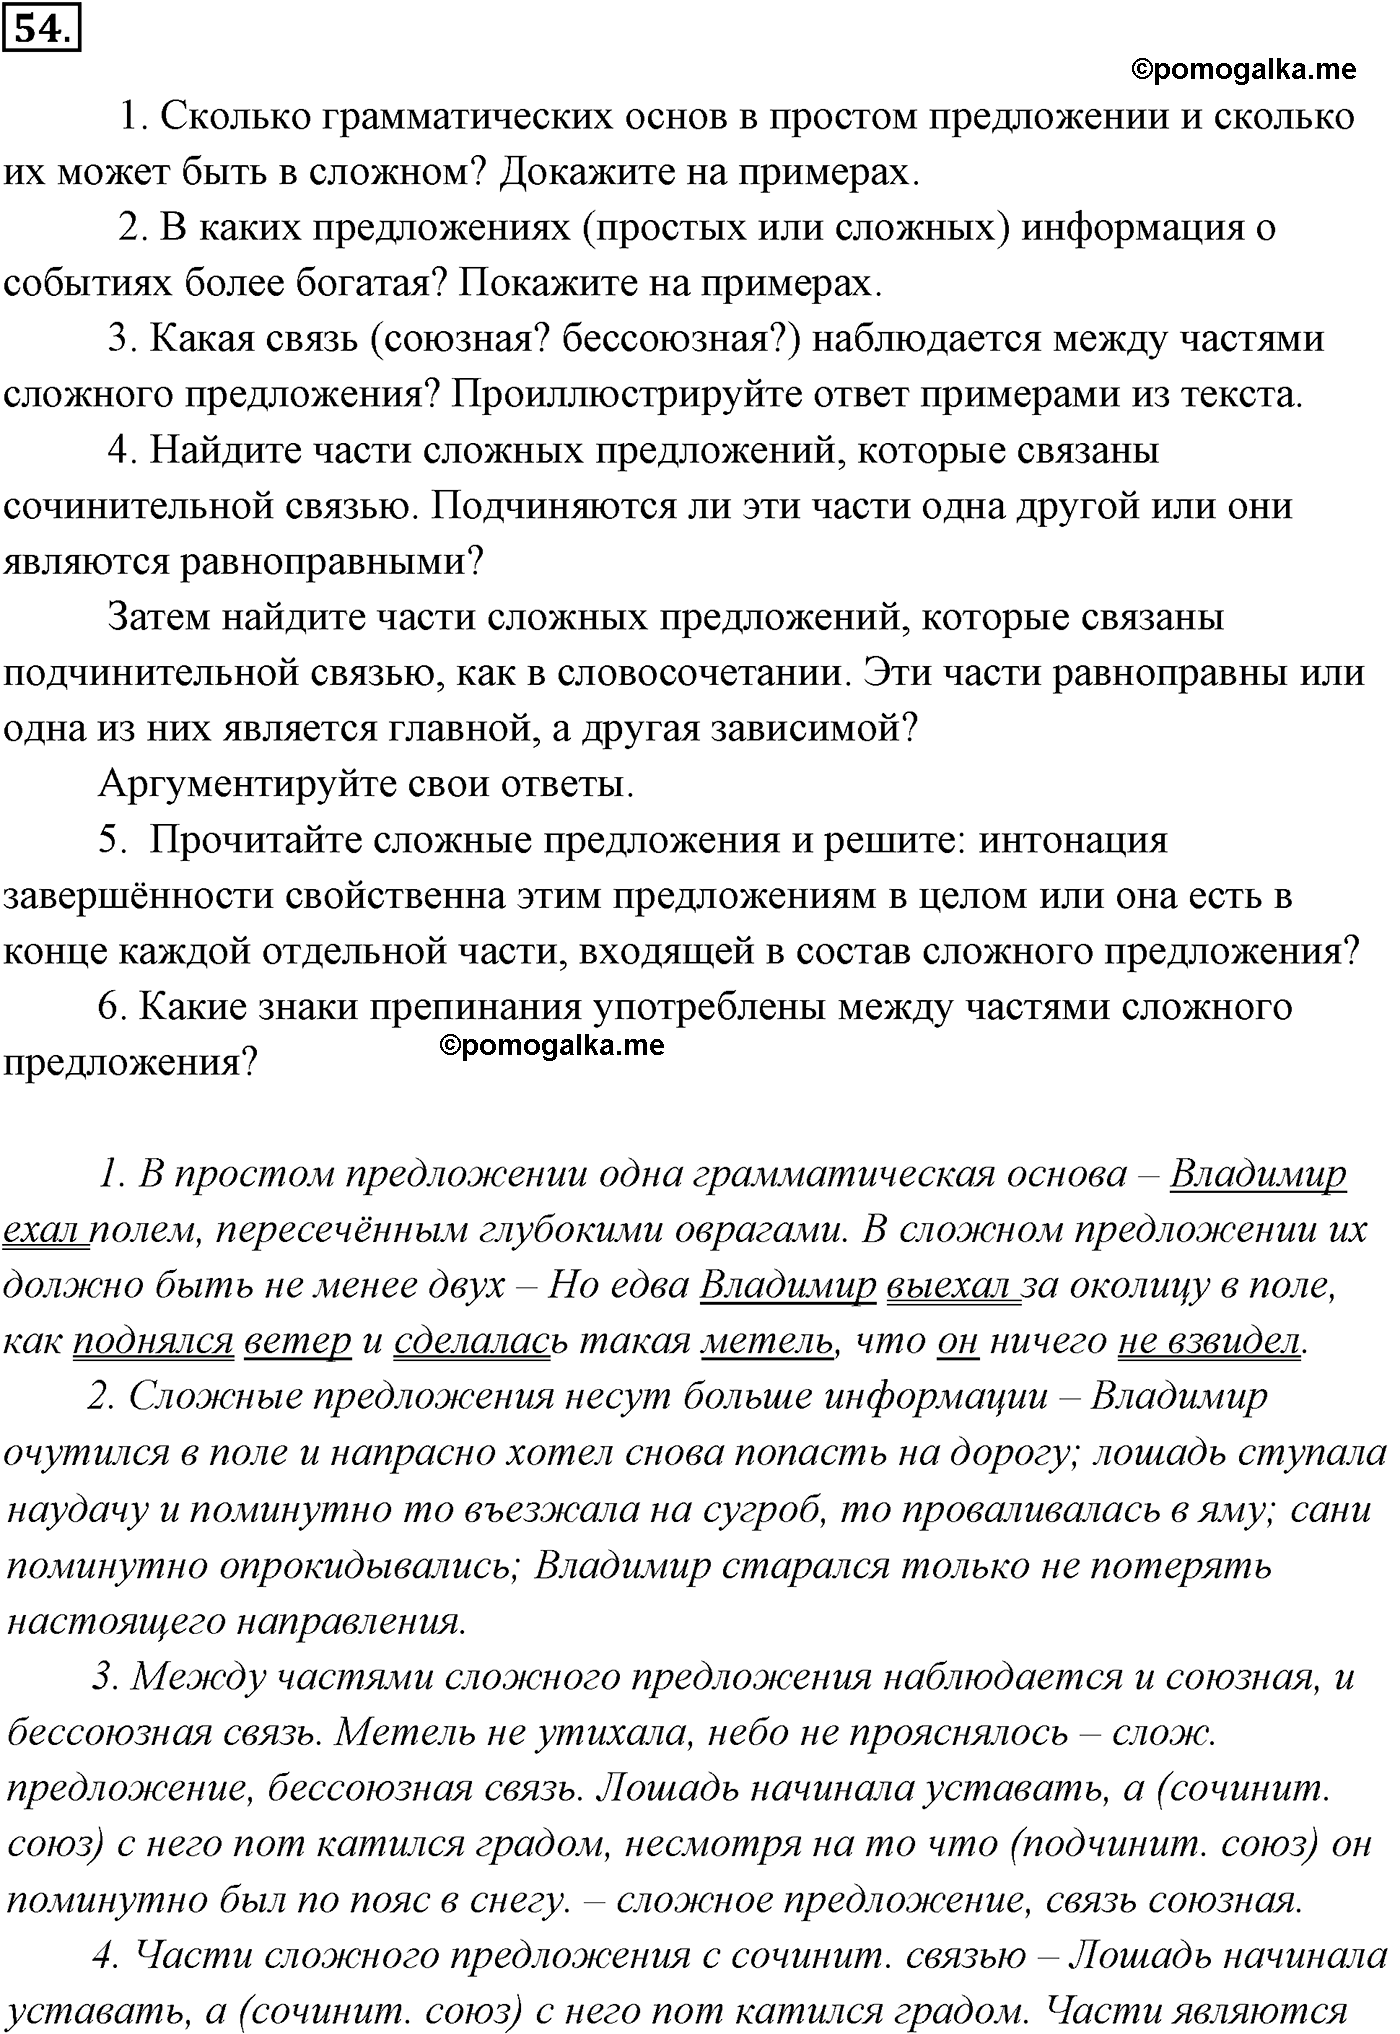 упражнение №54 русский язык 9 класс Разумовская